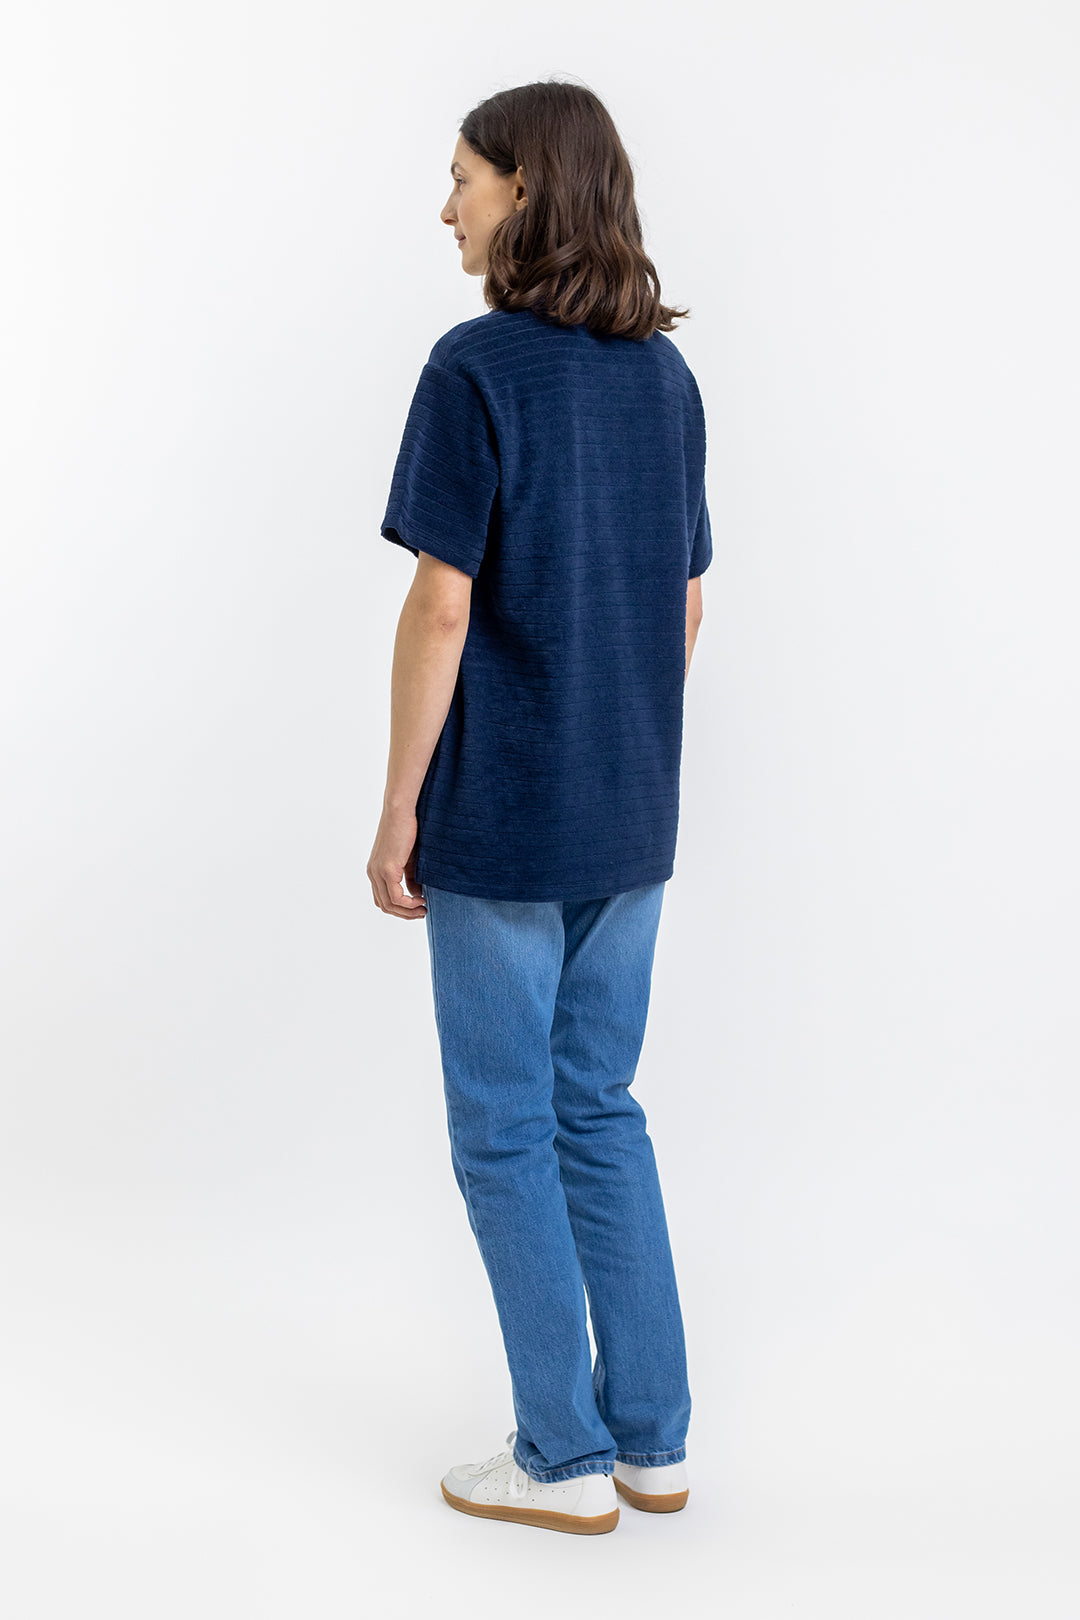 Blaues Poloshirt aus 100% Bio-Baumwolle von Rotholz